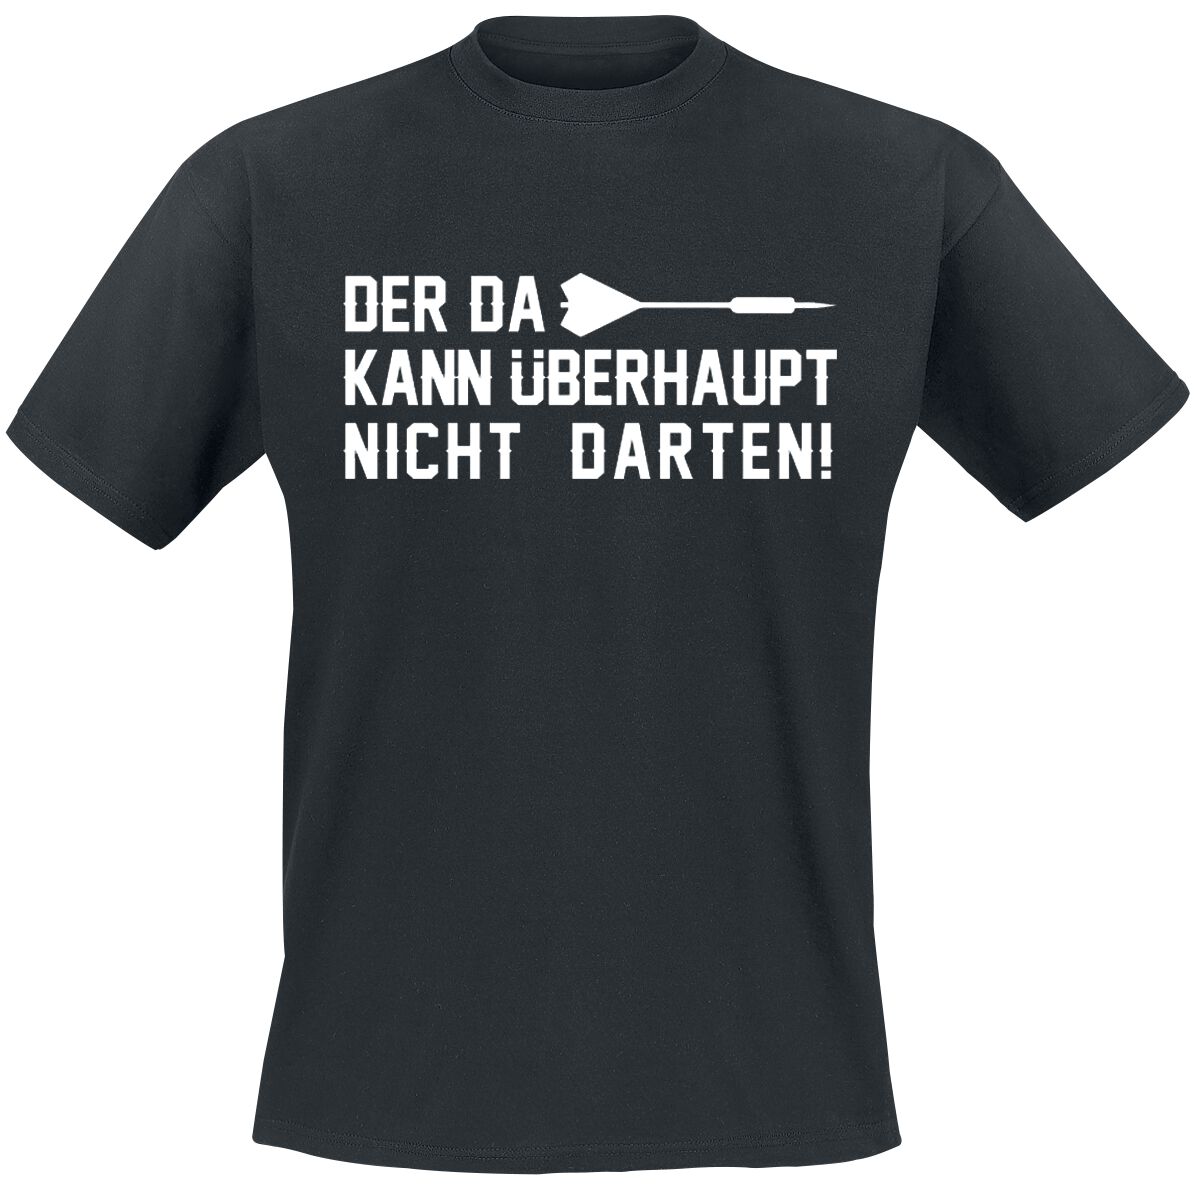 Darts T-Shirt - Der da kann überhaupt nicht darten! - M bis 3XL - für Männer - Größe M - schwarz